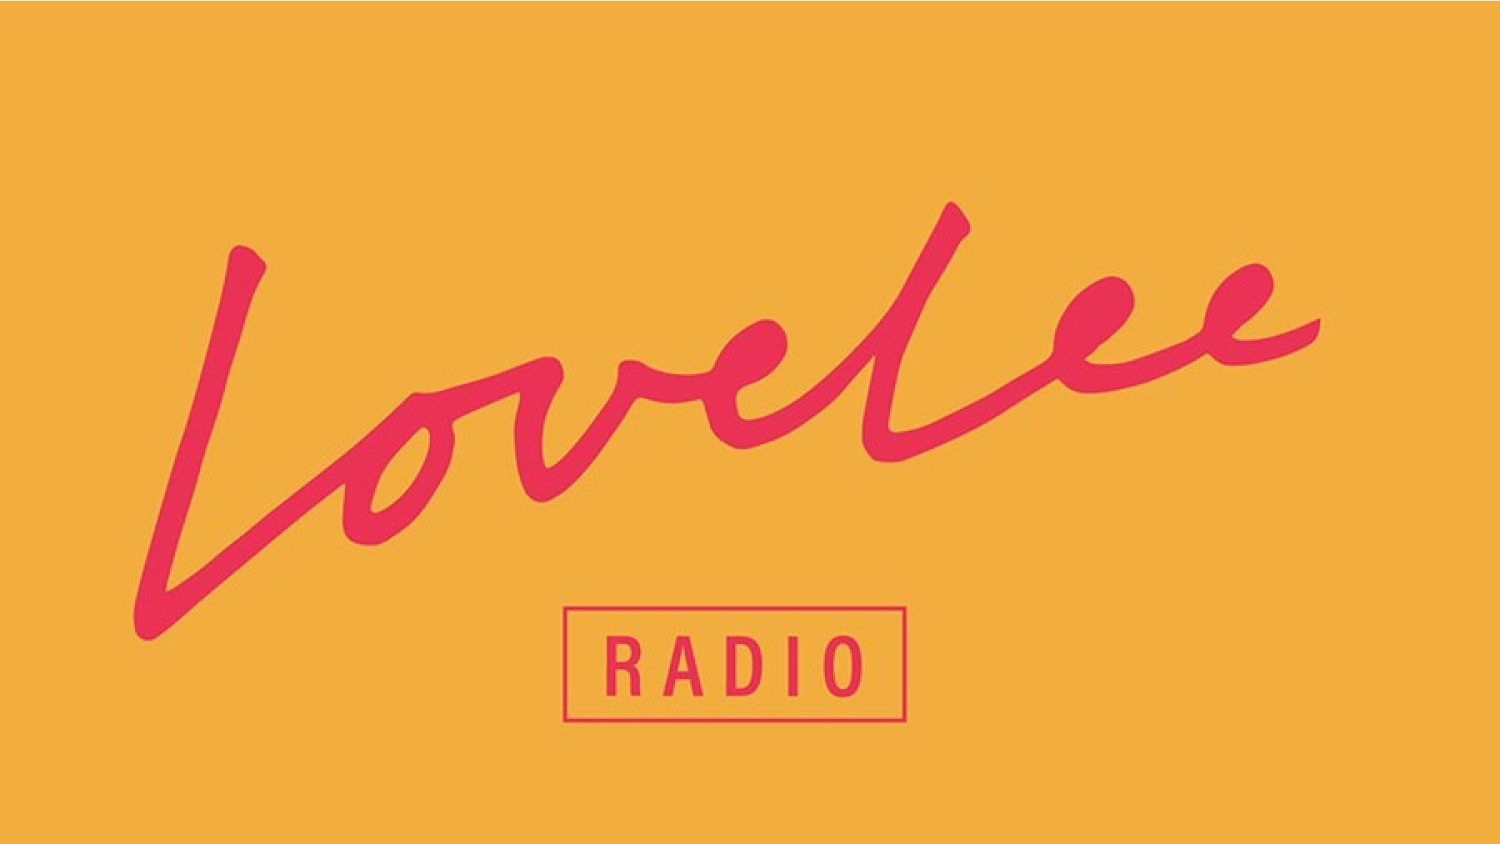 Party nieuws: Lovelee Radio brengt het nachtclub gevoel thuis